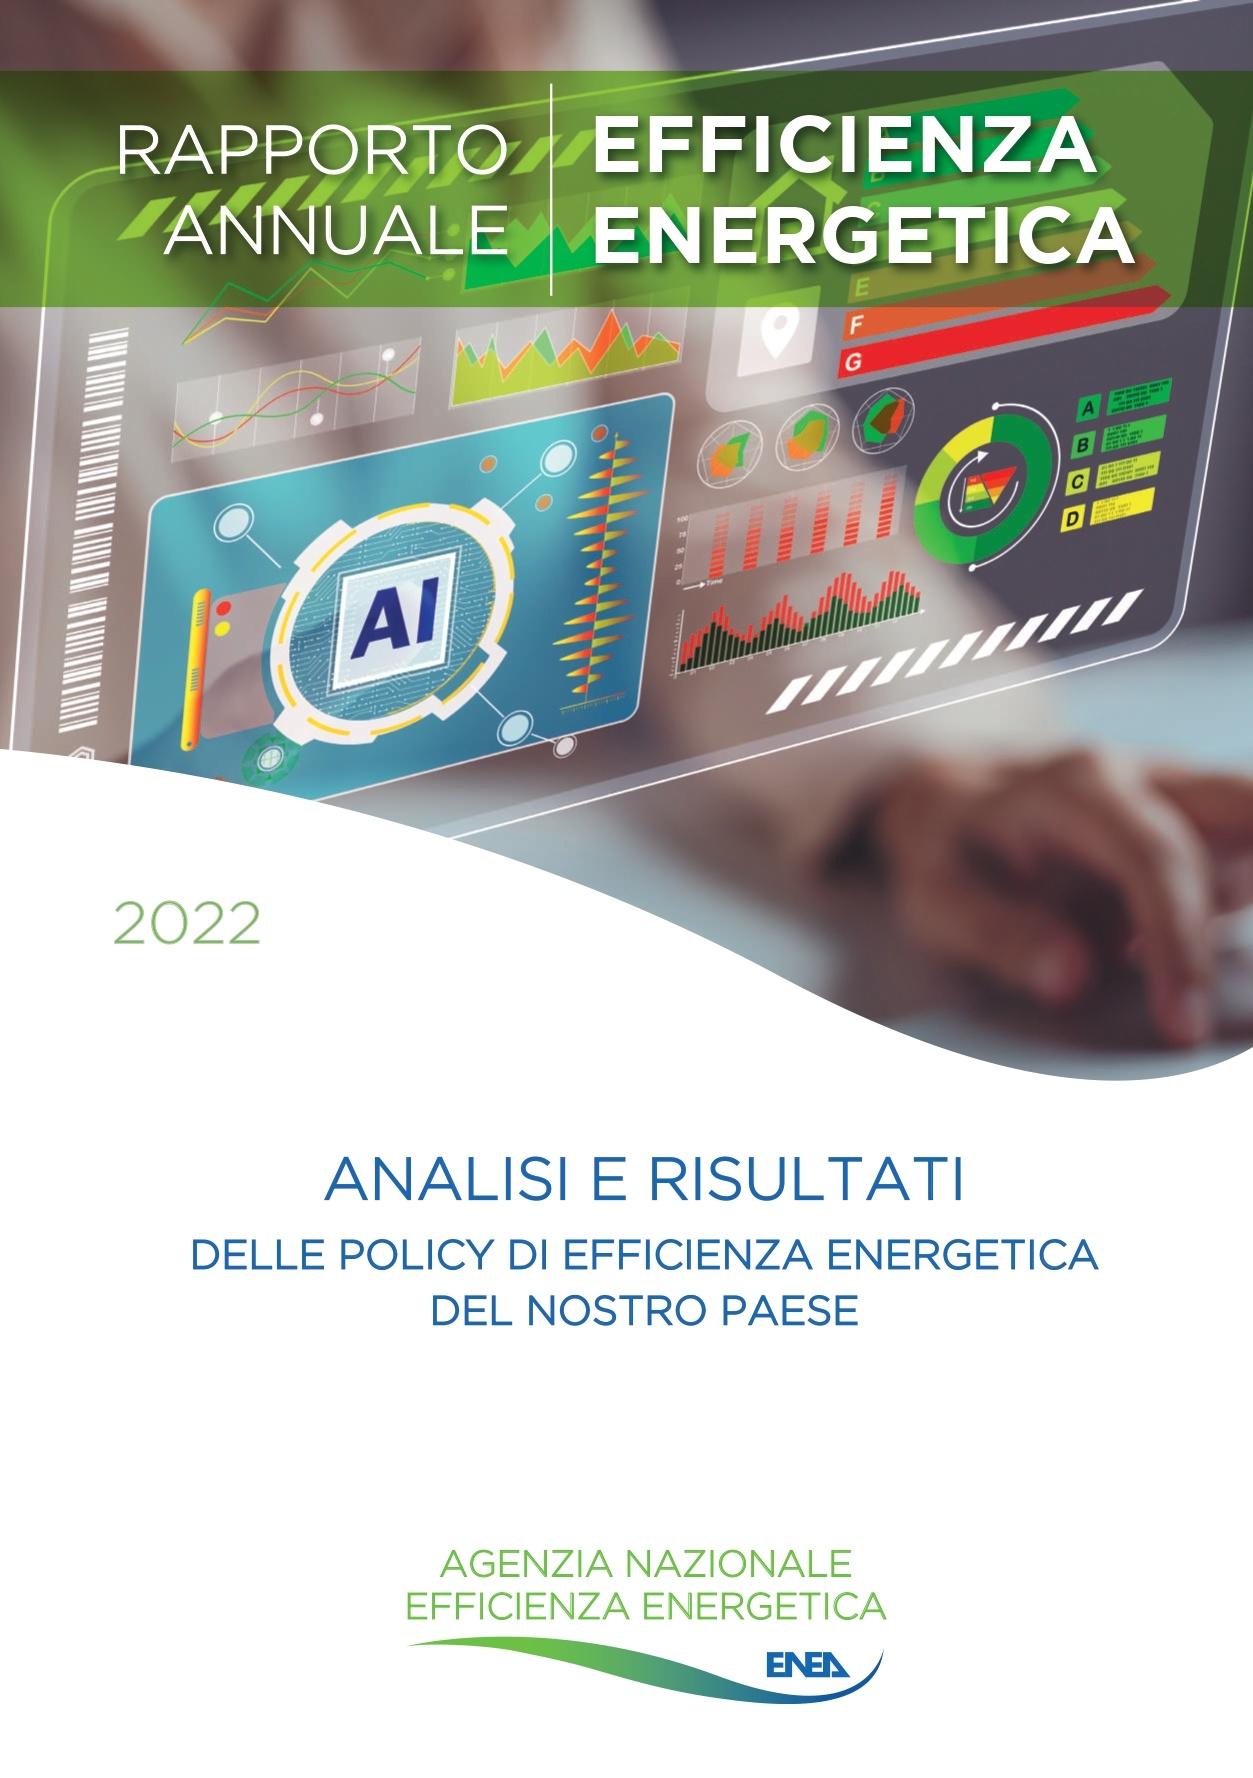 Copertina del Rapporto Annuale sull'Efficienza Energetica 2022 